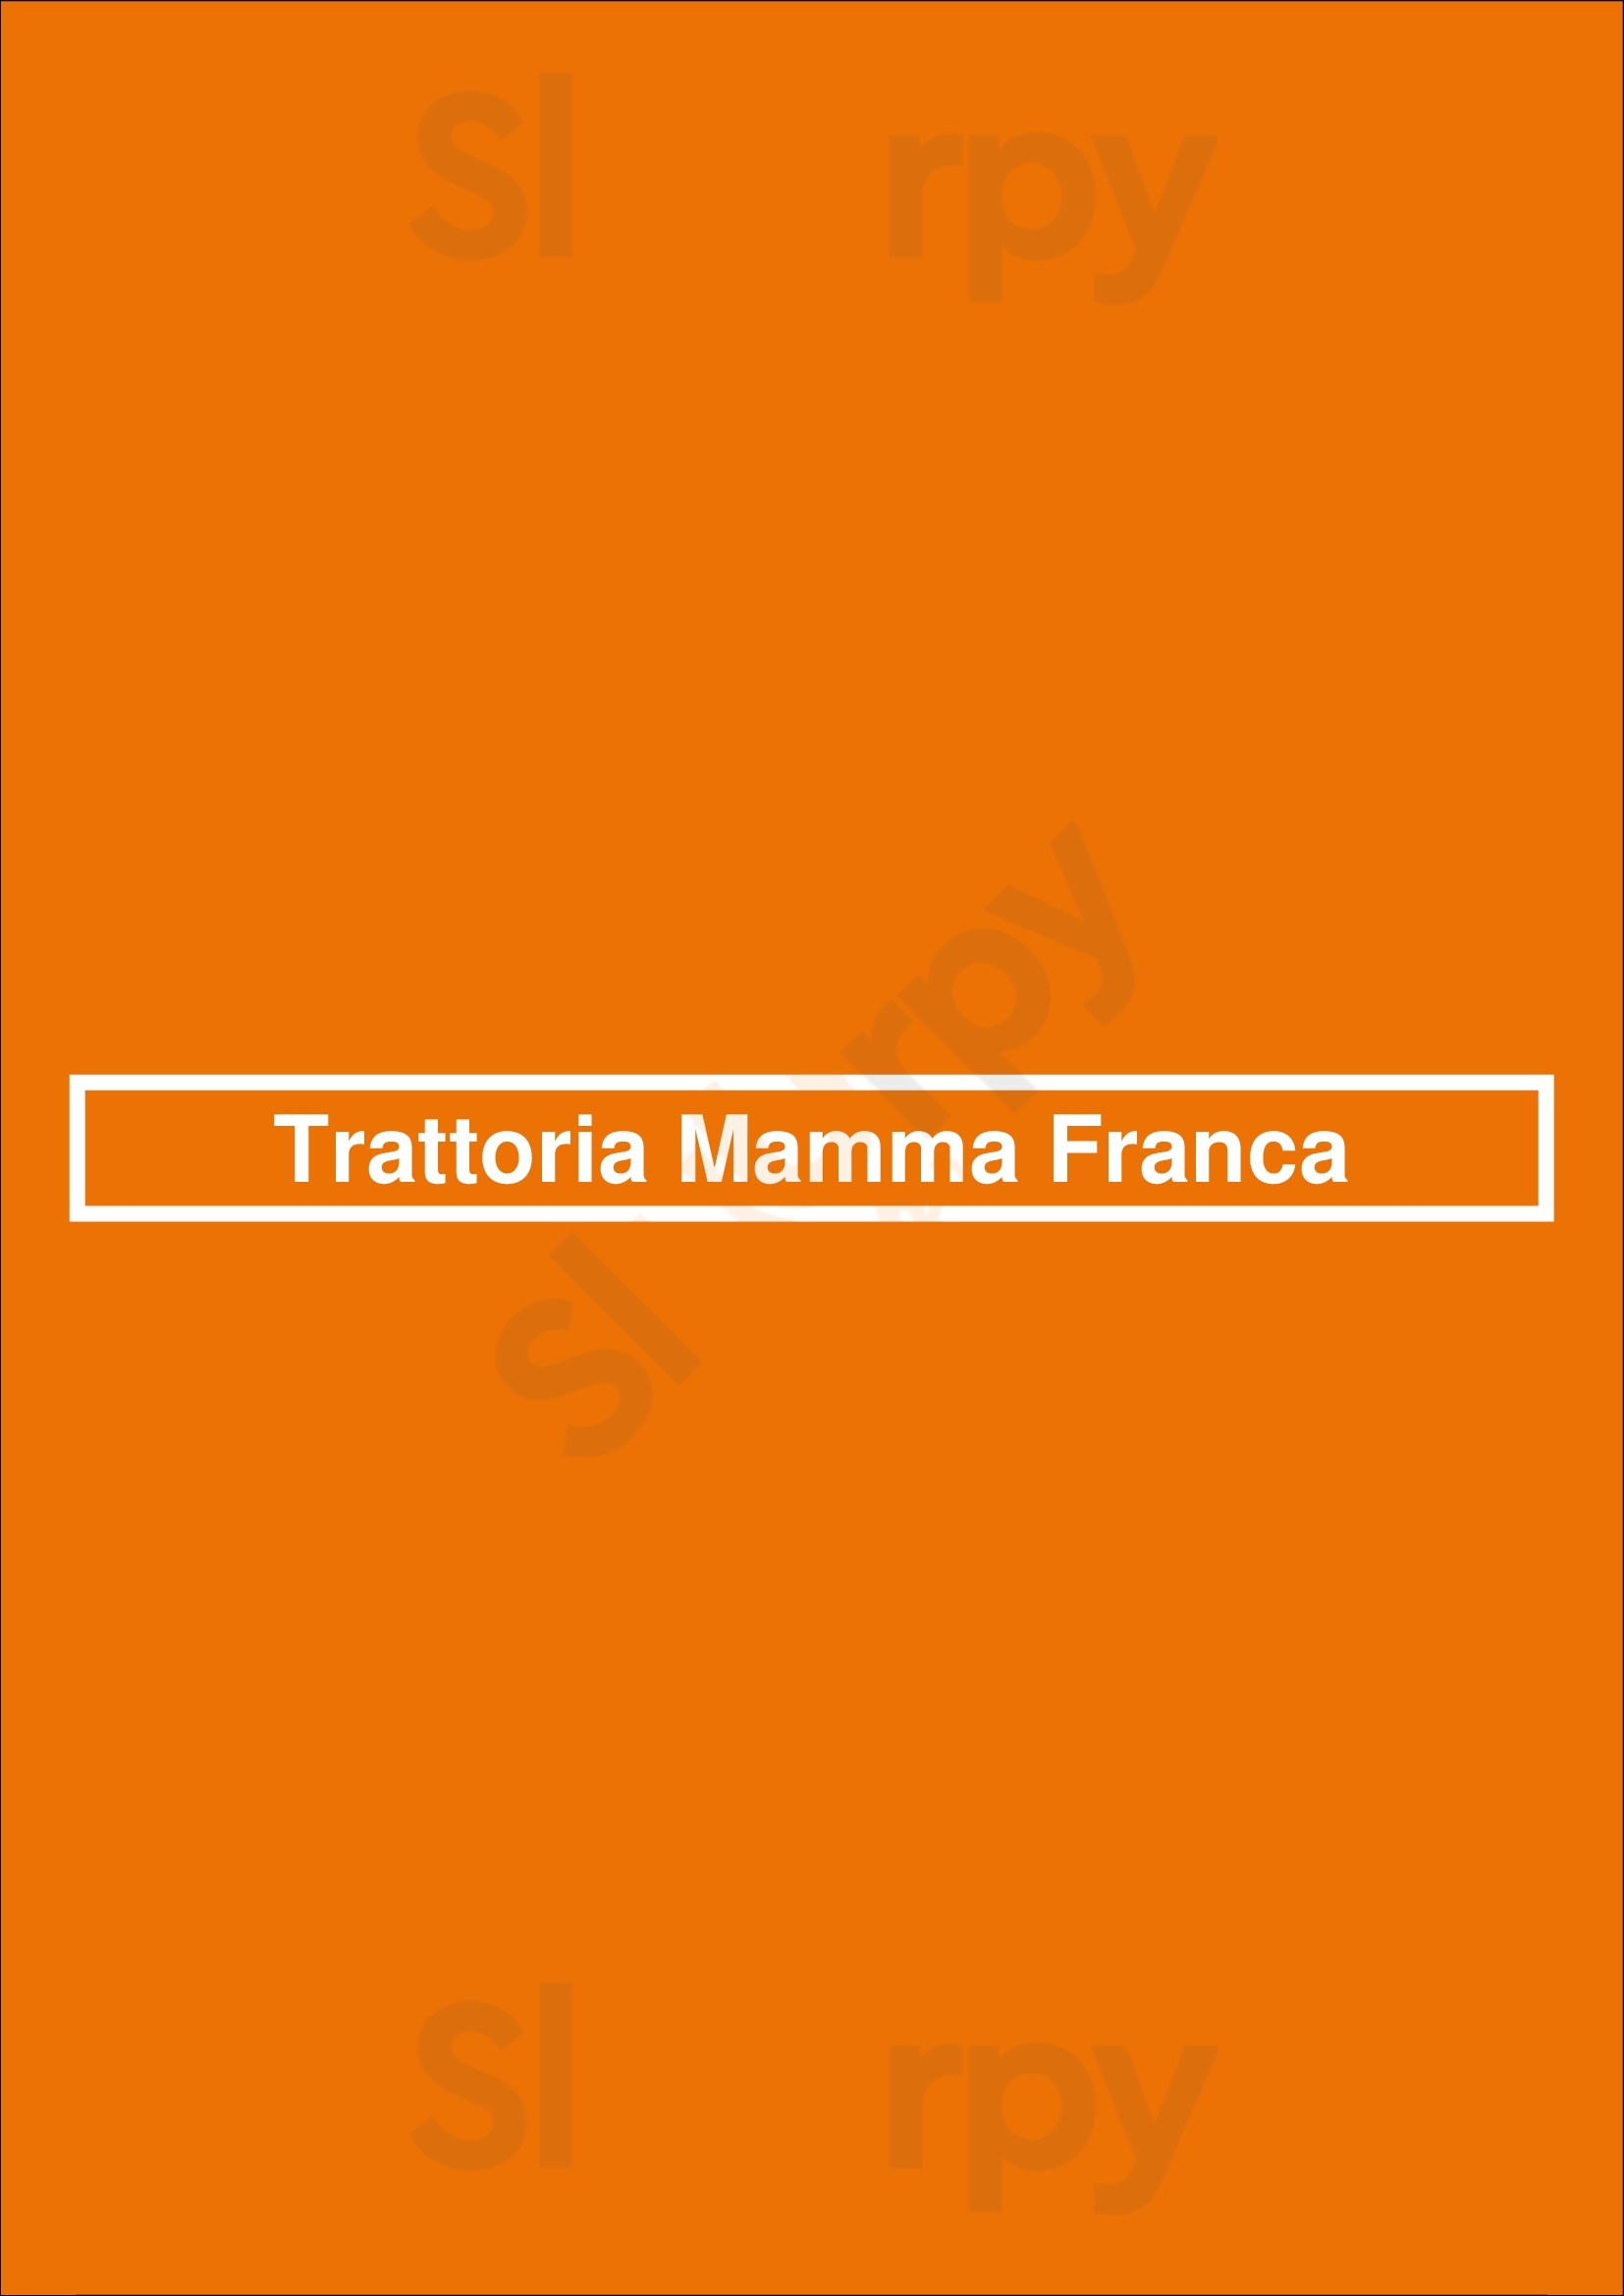 Trattoria Mamma Franca Málaga Menu - 1